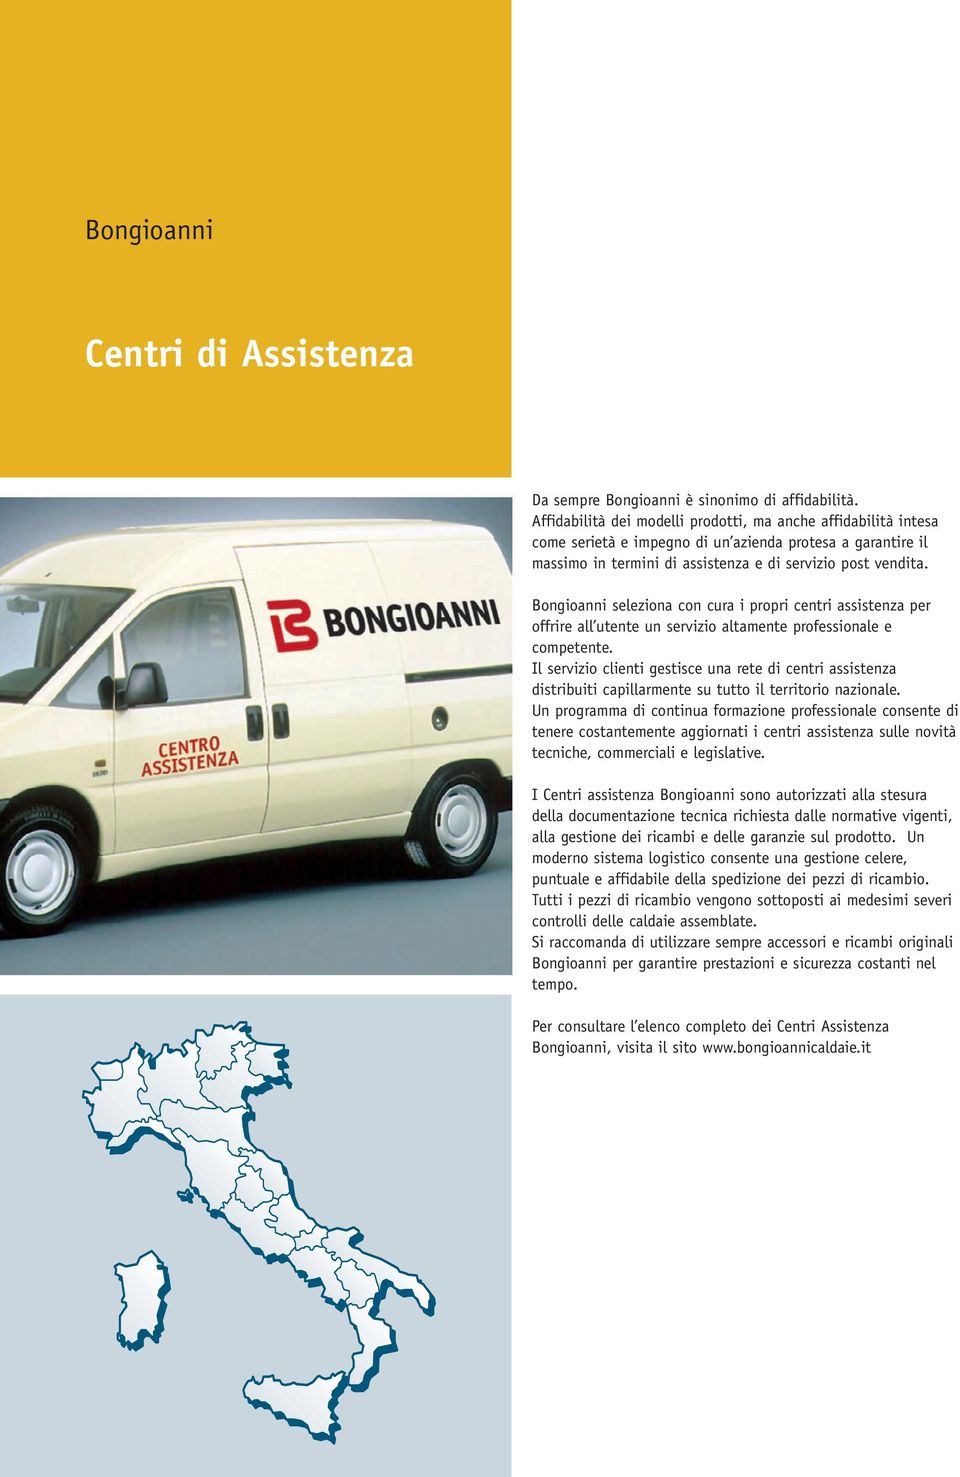 Bongioanni seleziona con cura i propri centri assistenza per offrire all utente un servizio altamente professionale e competente.